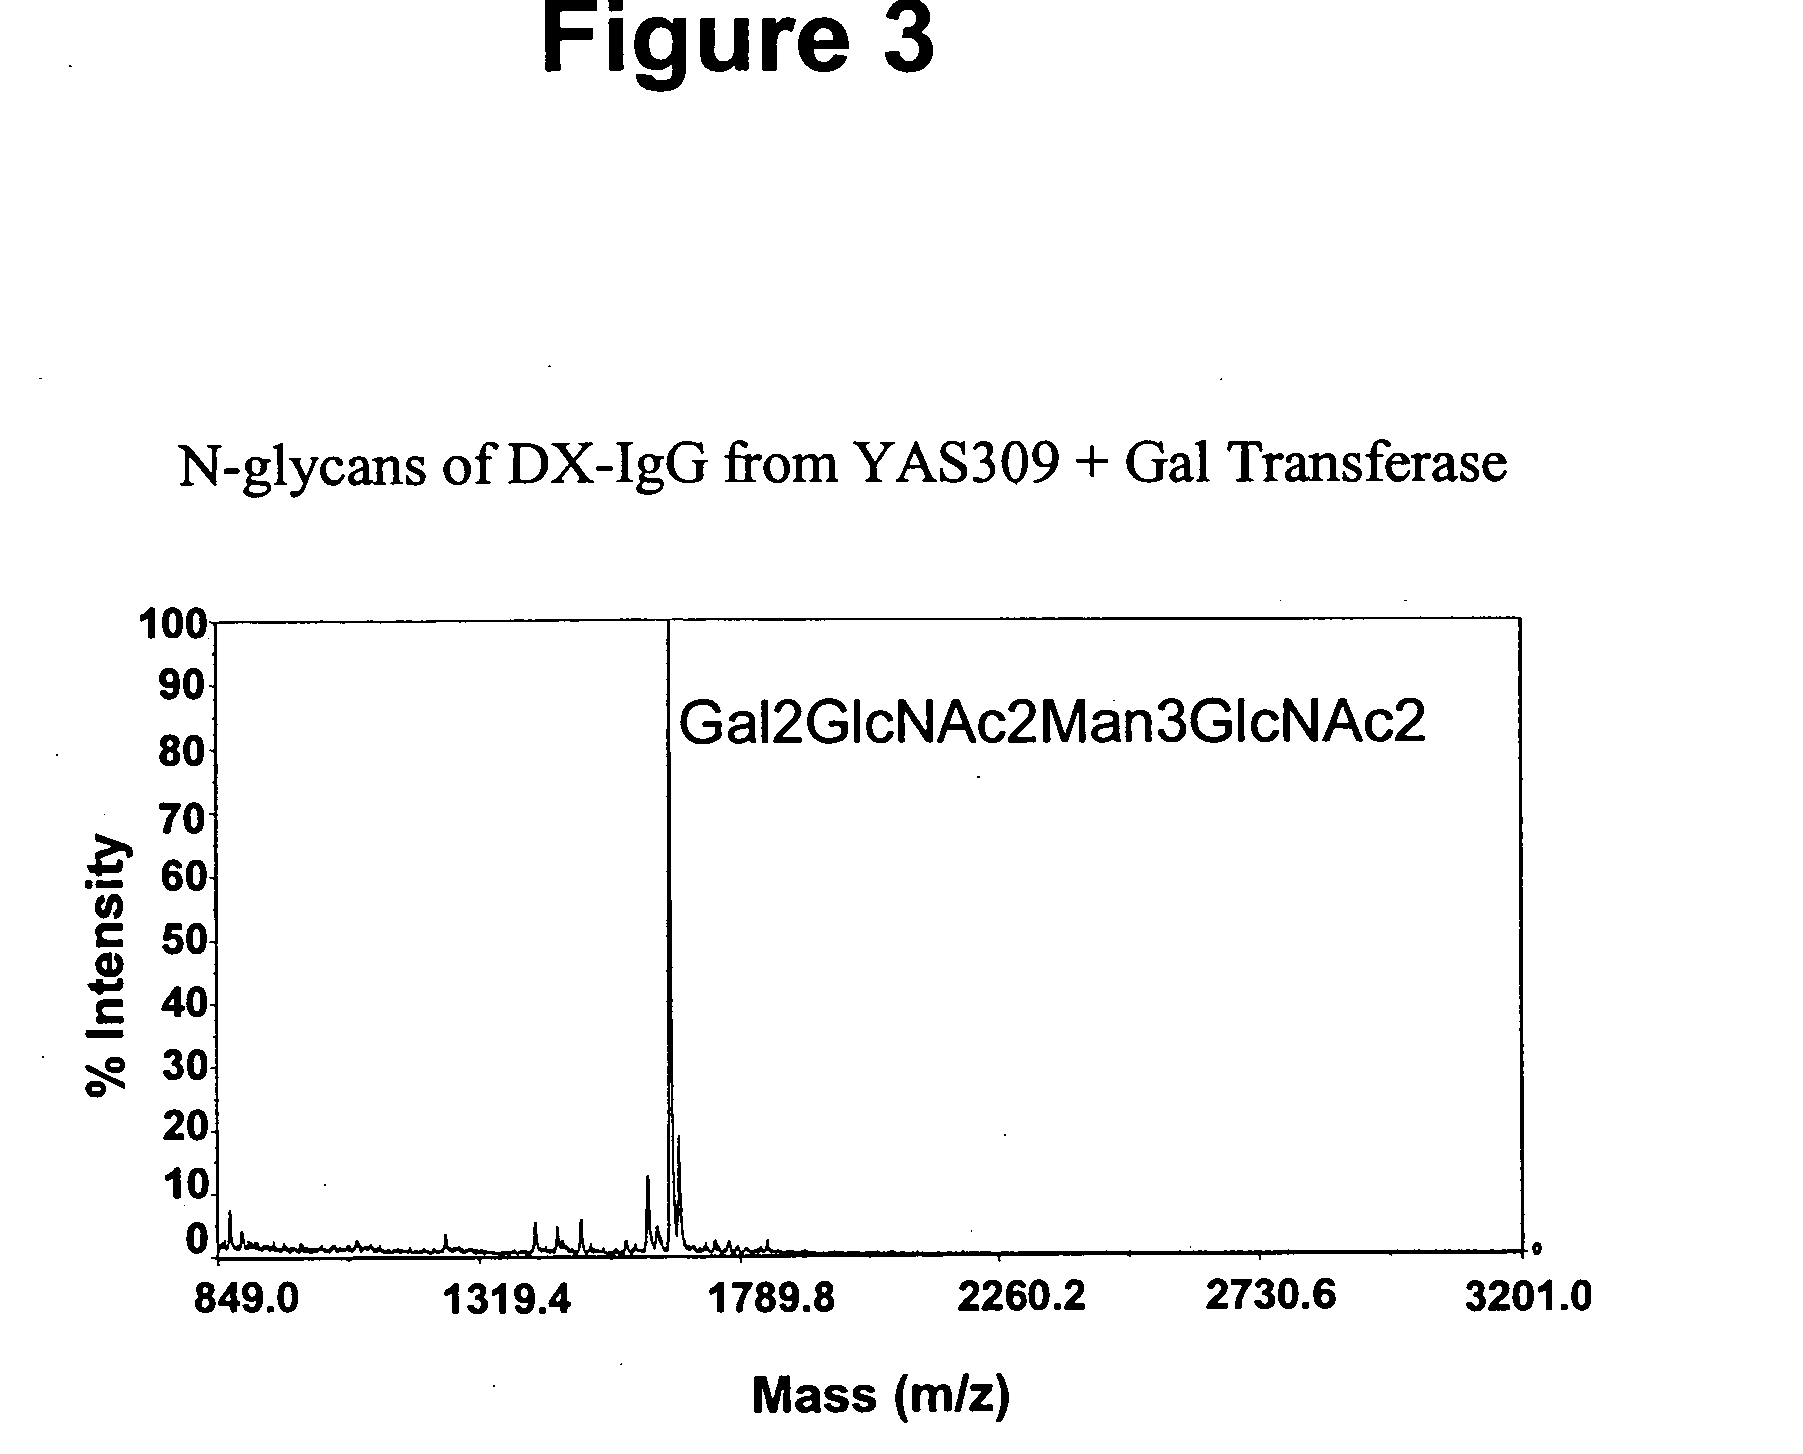 Immunoglobulins comprising predominantly a Gal2GlcNAc2Man3GlcNAc2 glycoform